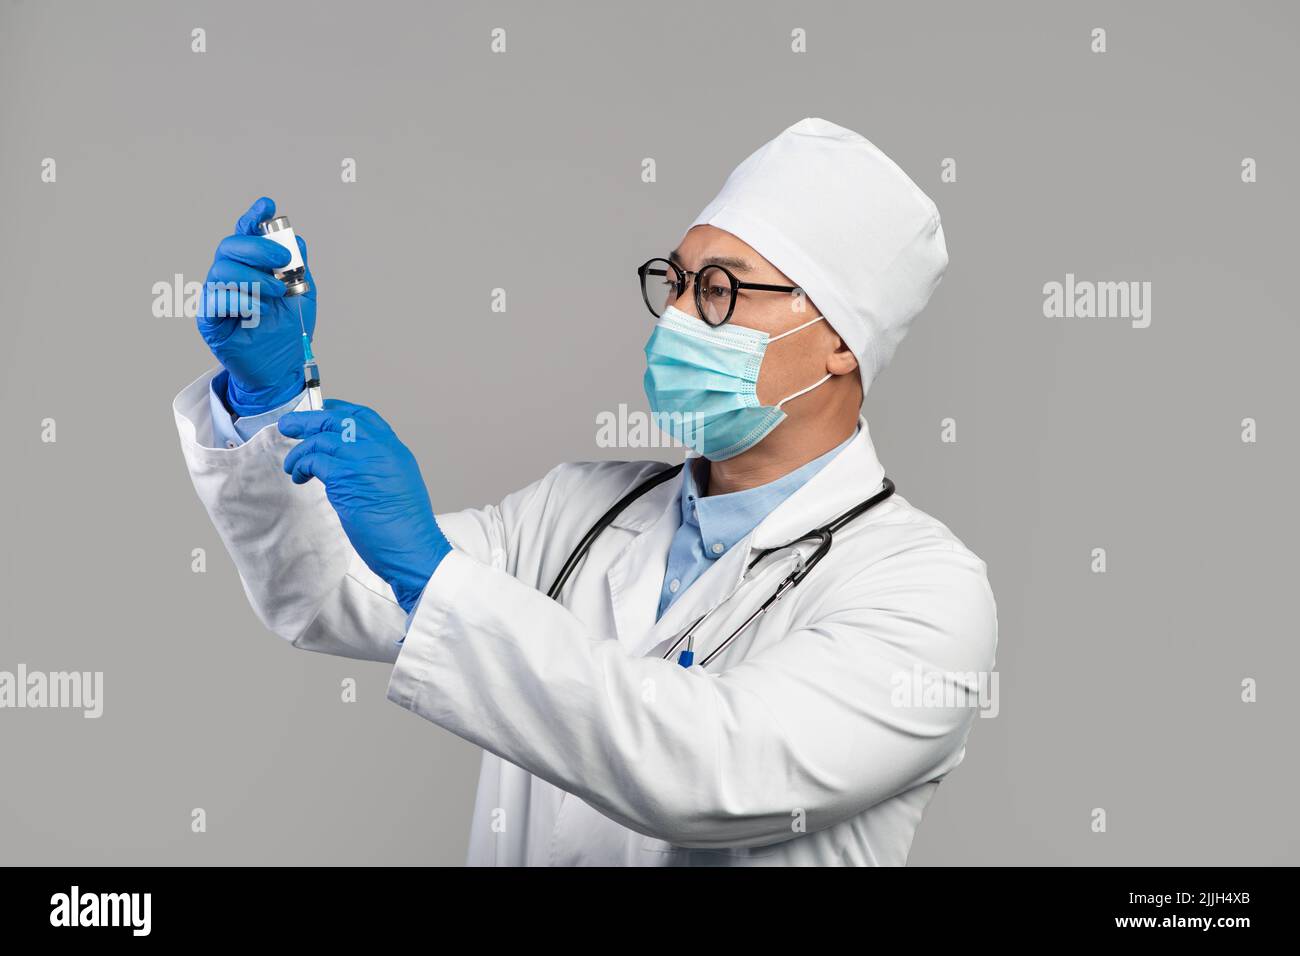 Un médecin coréen adulte sérieux occupé en manteau blanc, des lunettes et des gants prennent le vaccin dans une seringue Banque D'Images